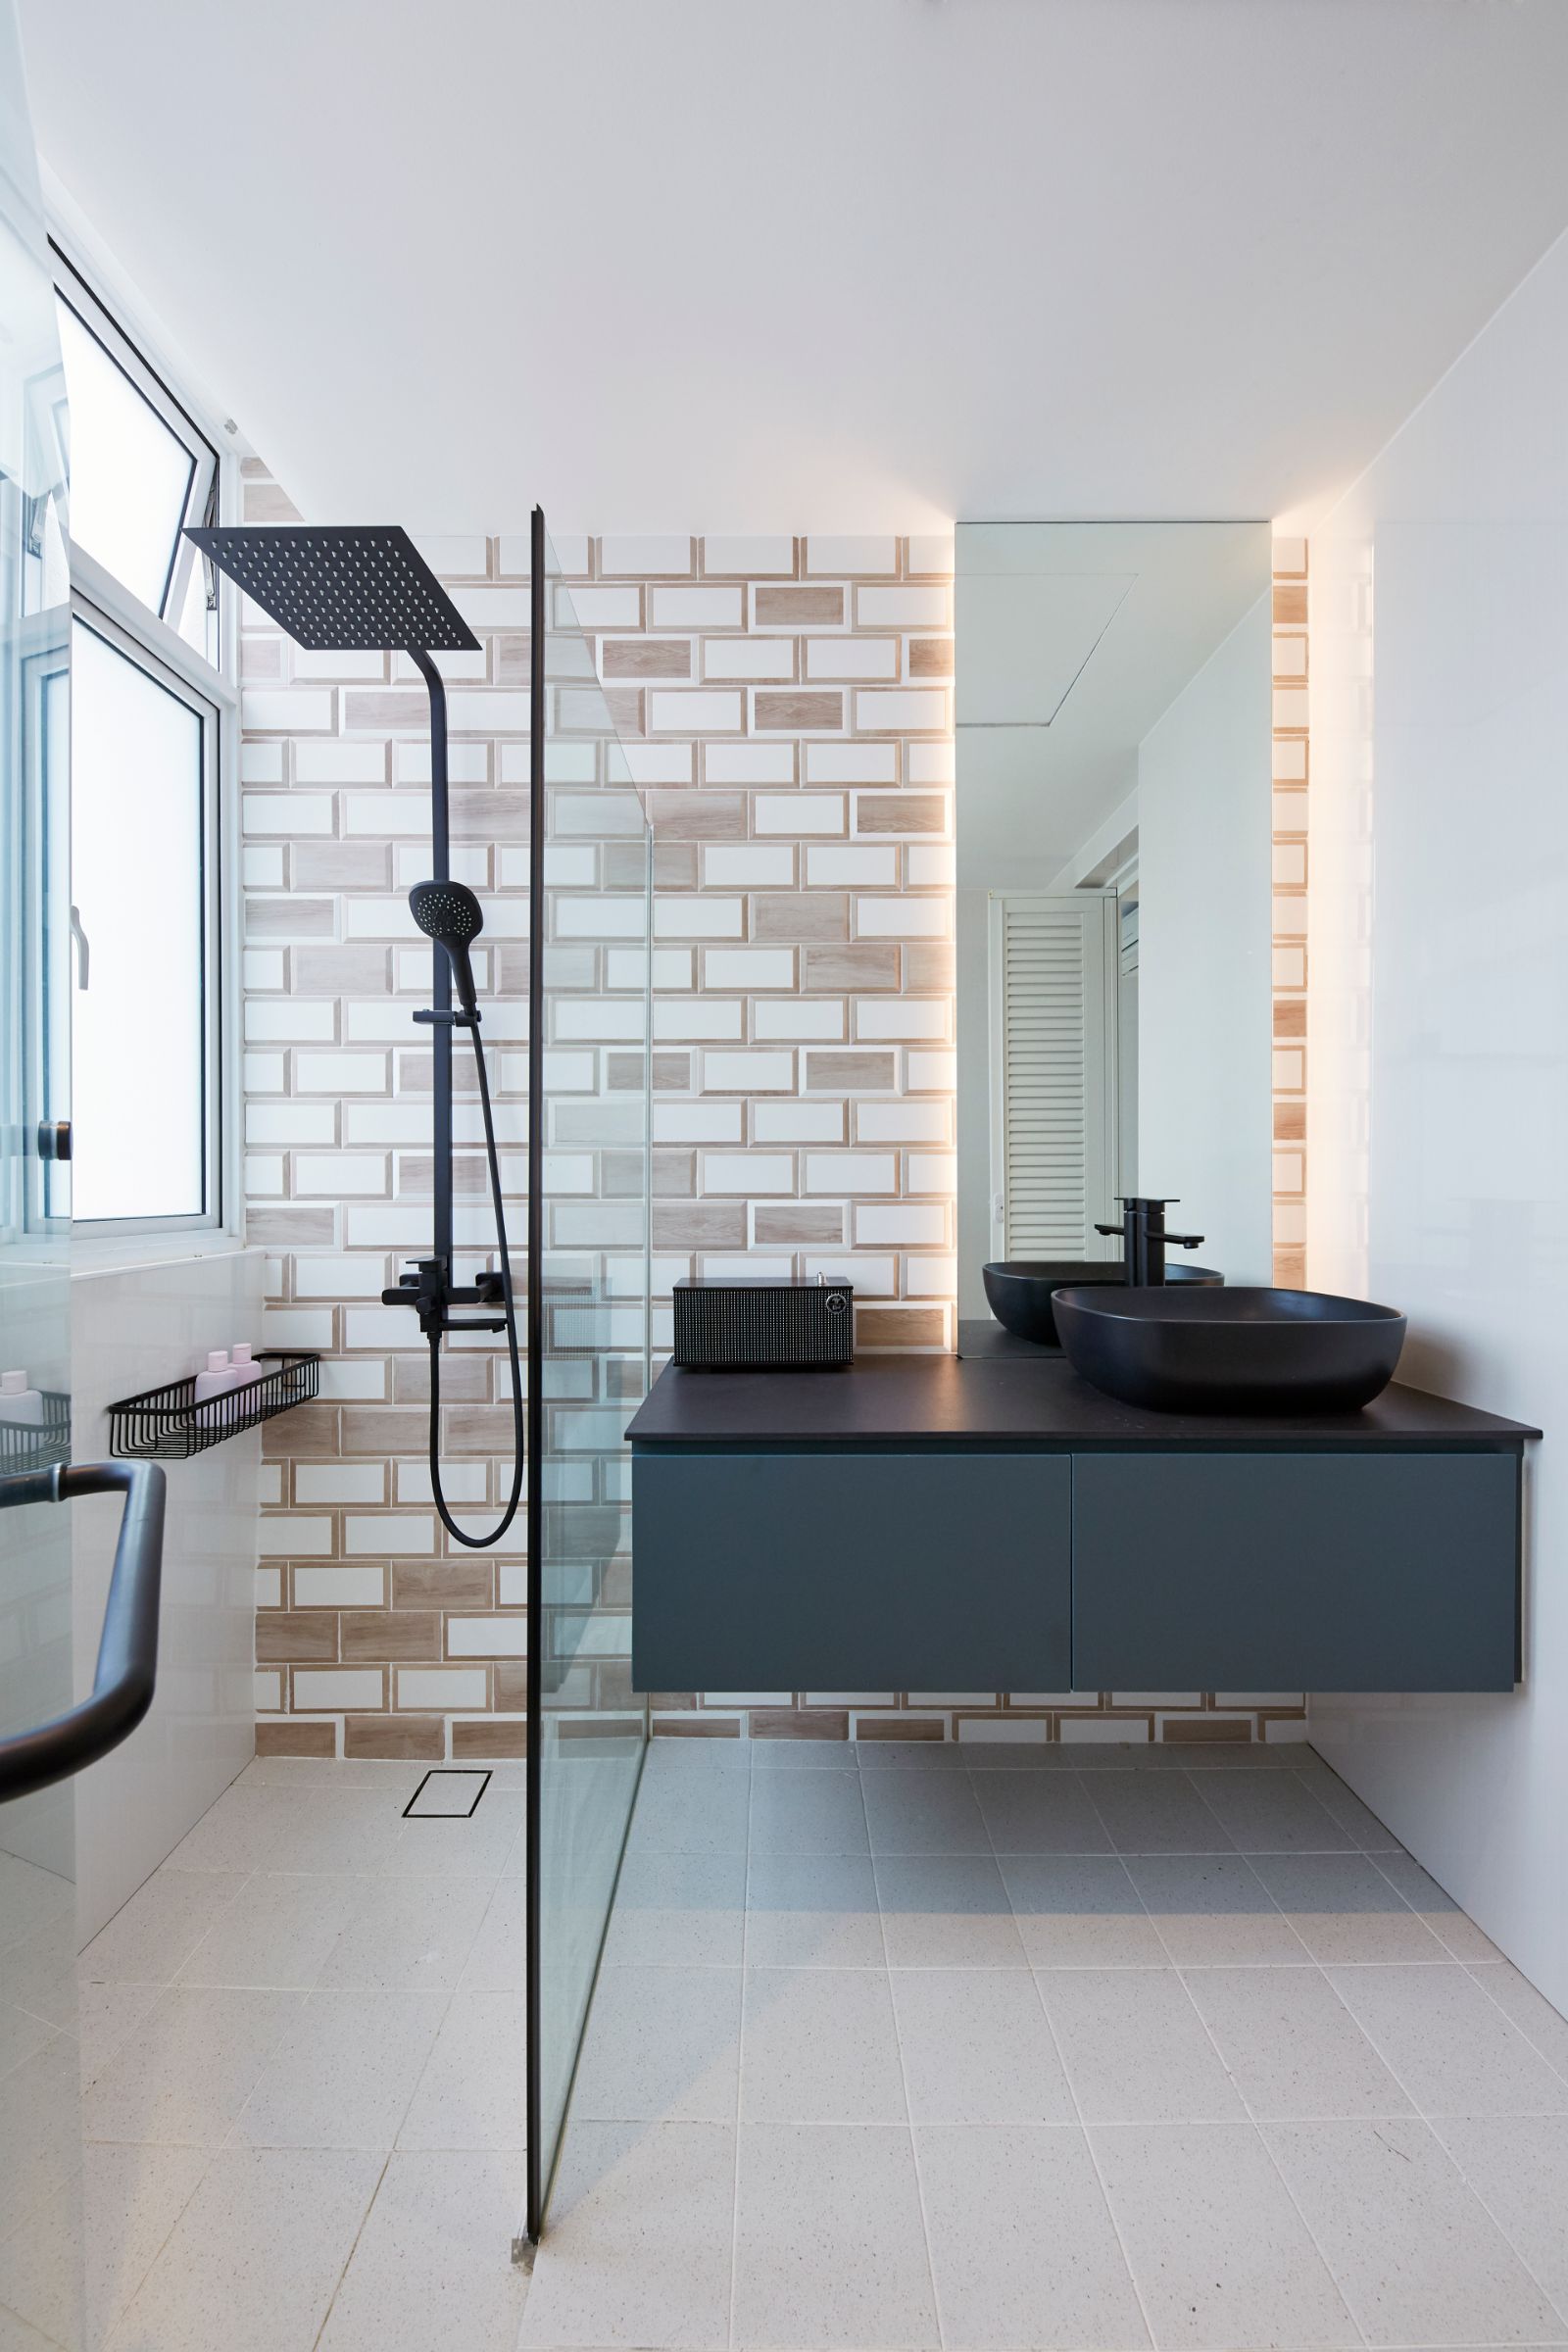 Modern Design - Bathroom - Landed House - Design by Carpenters 匠